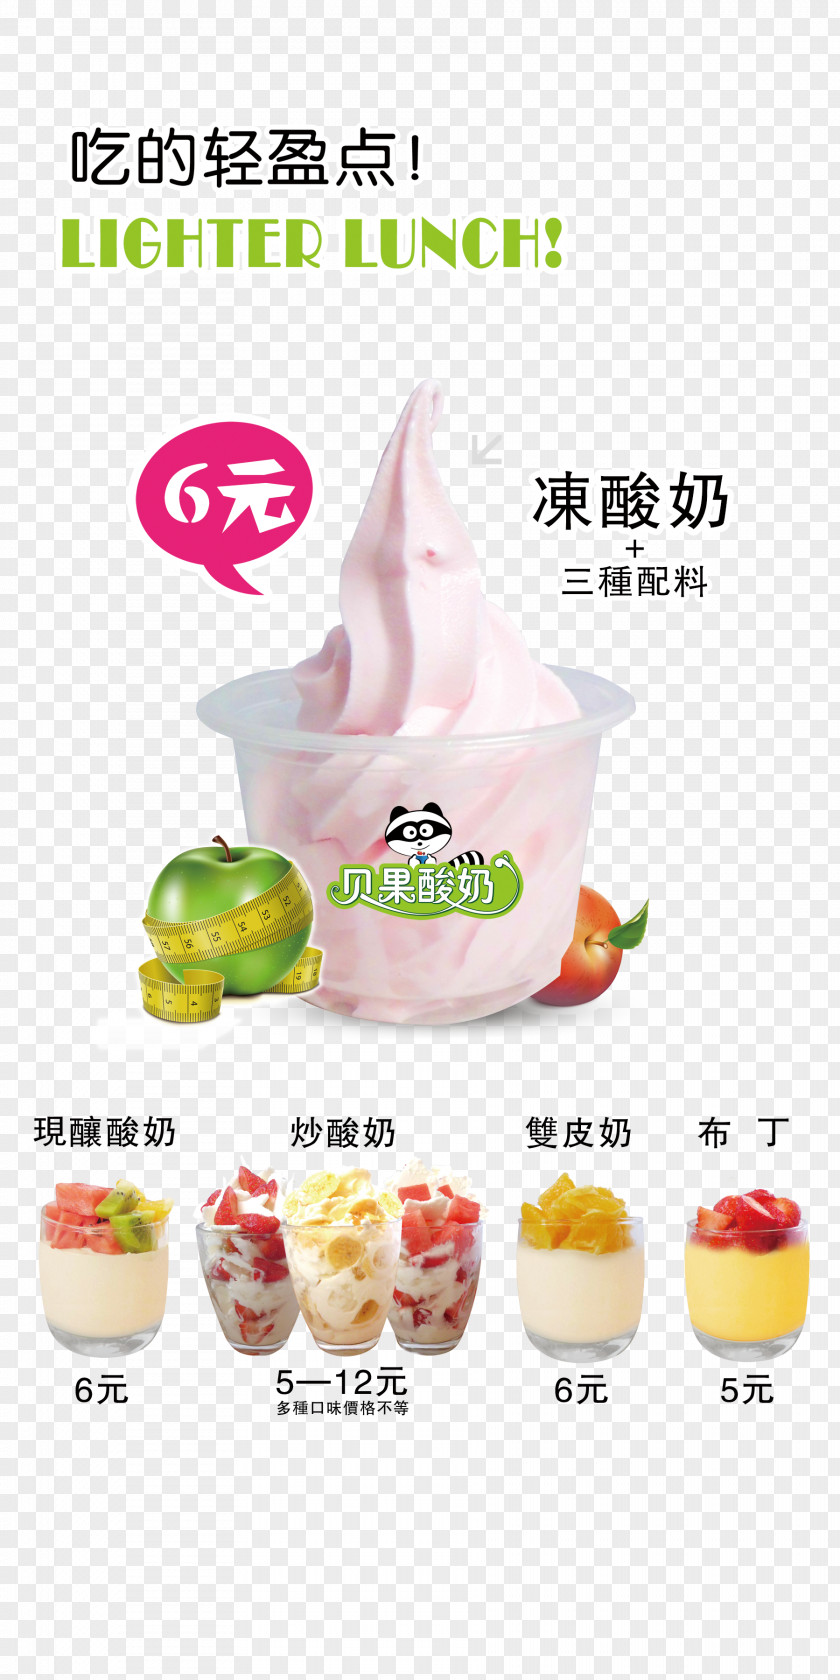 Delicious Frozen Yogurt Cream Dessert Cuisine Diet Food PNG